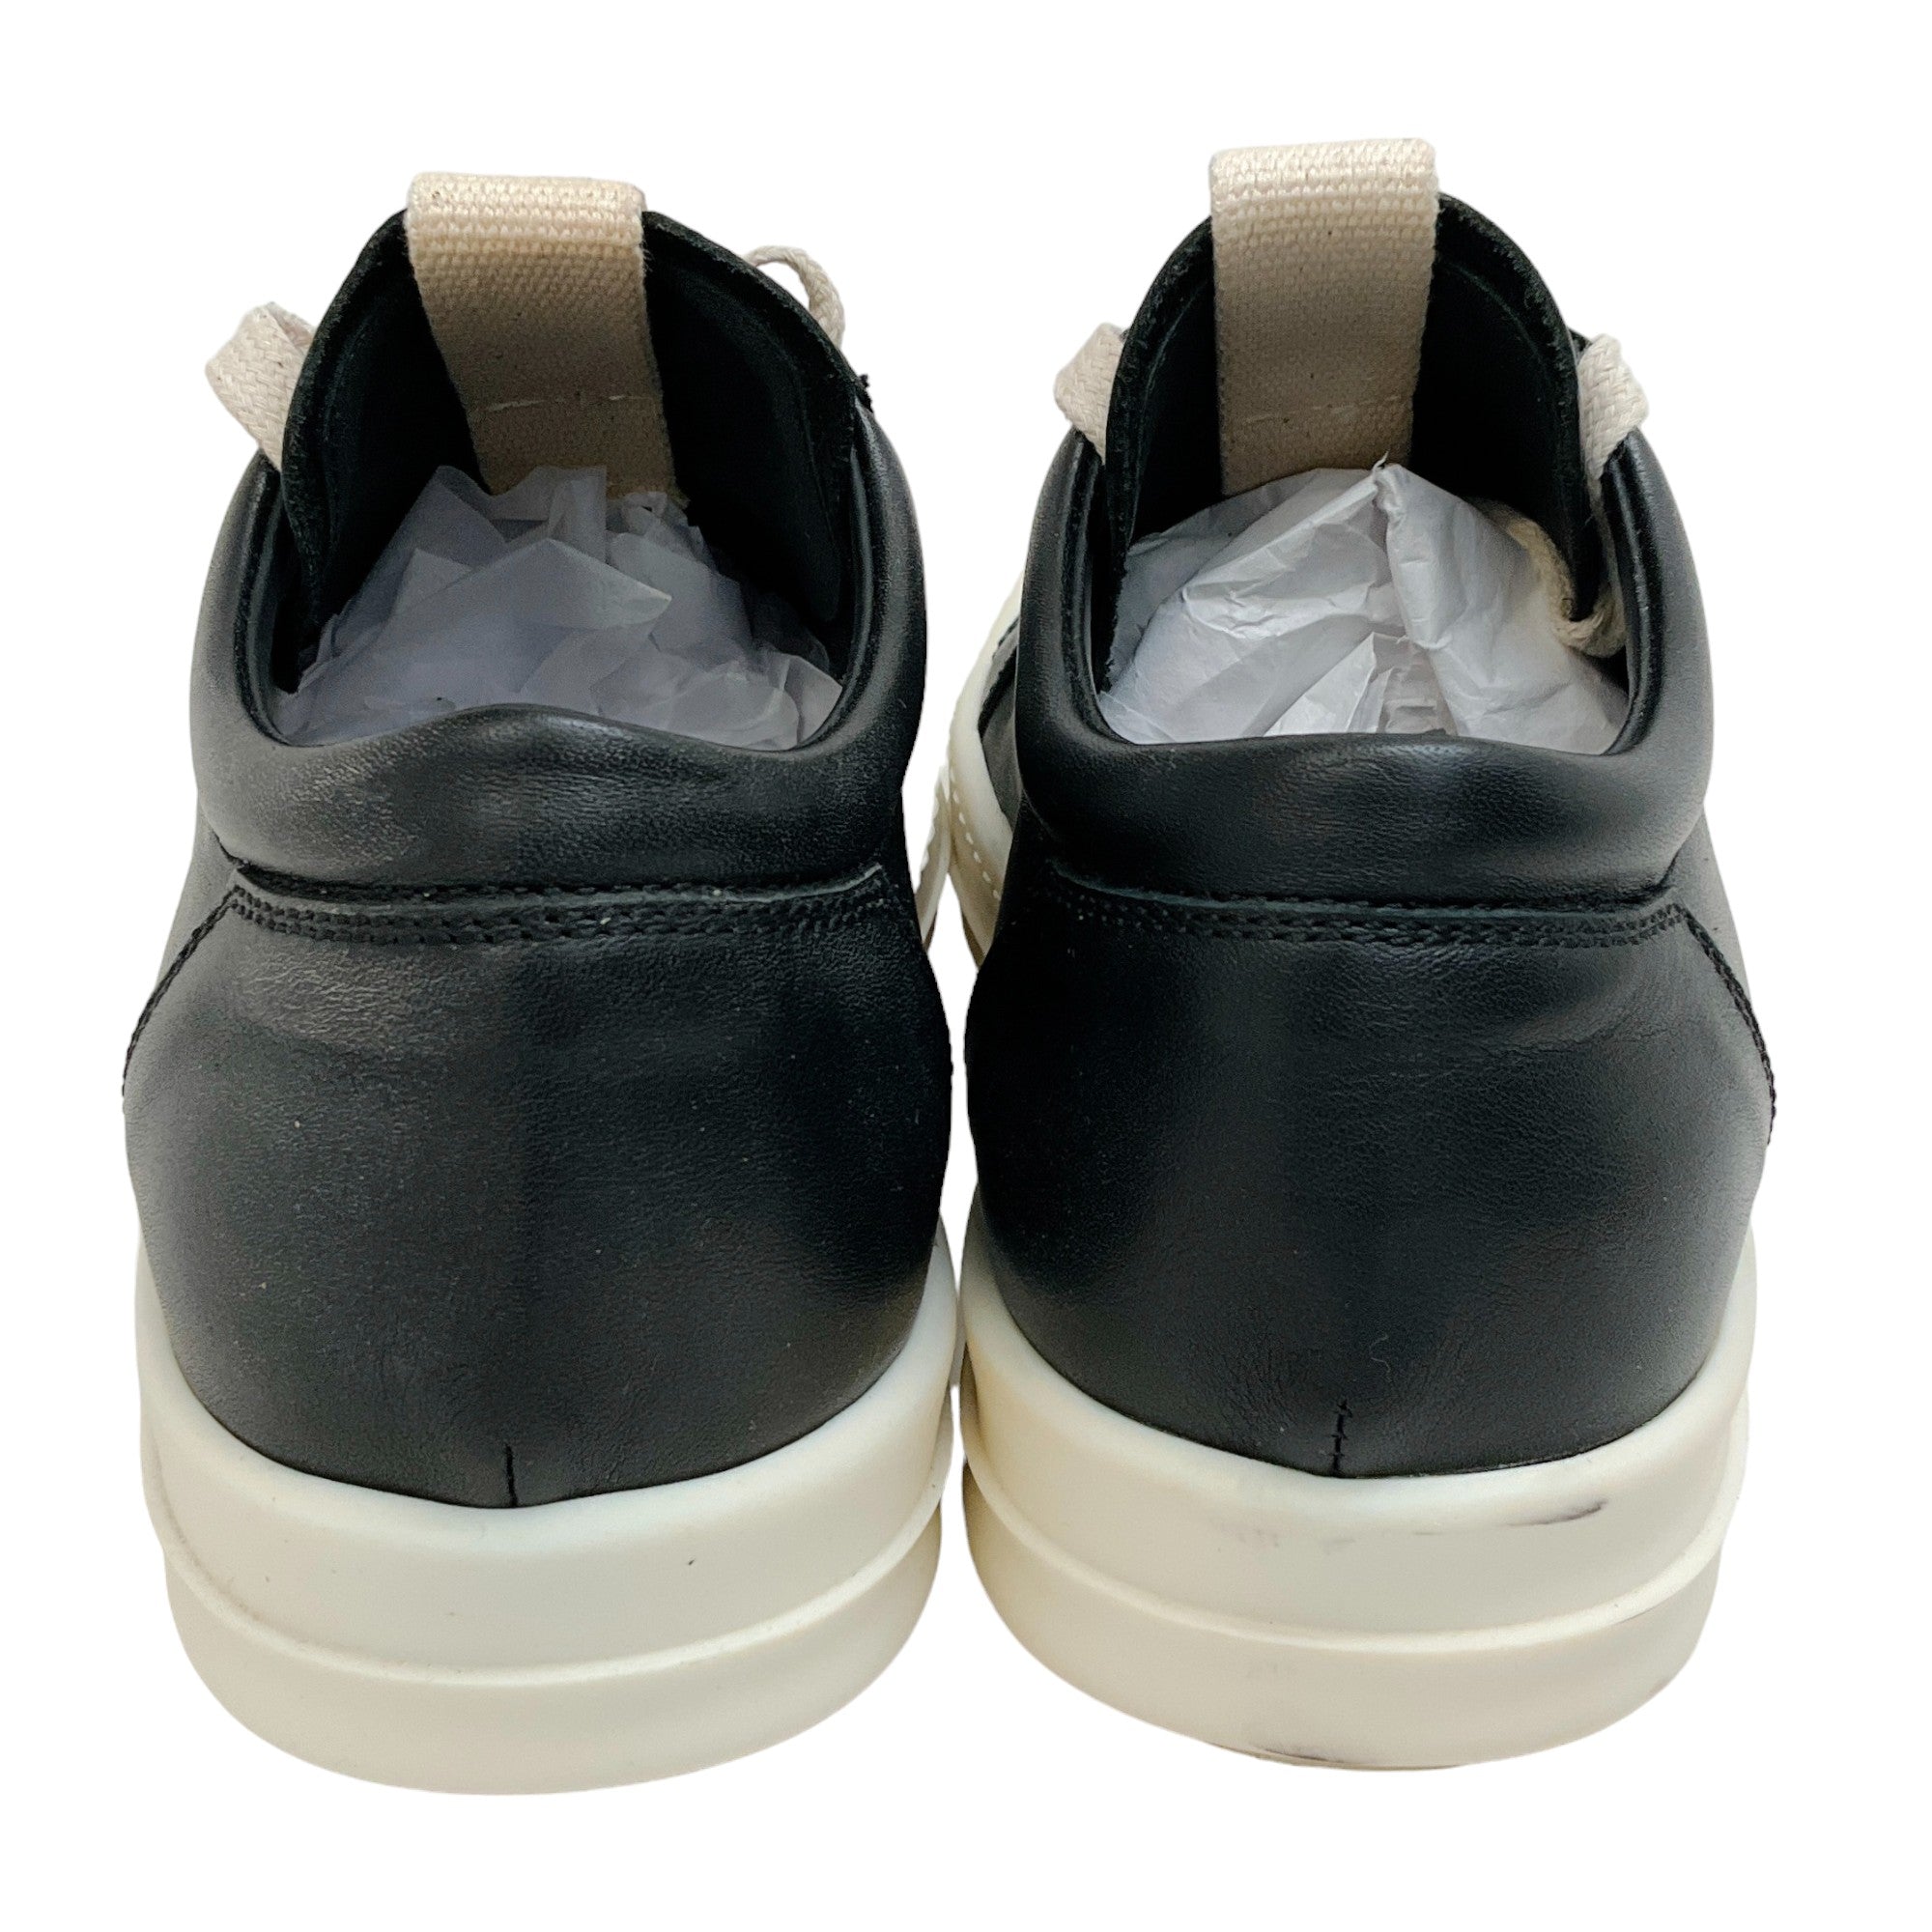 Rick Owens Black / Milk Leather Vintage Low Sneakers